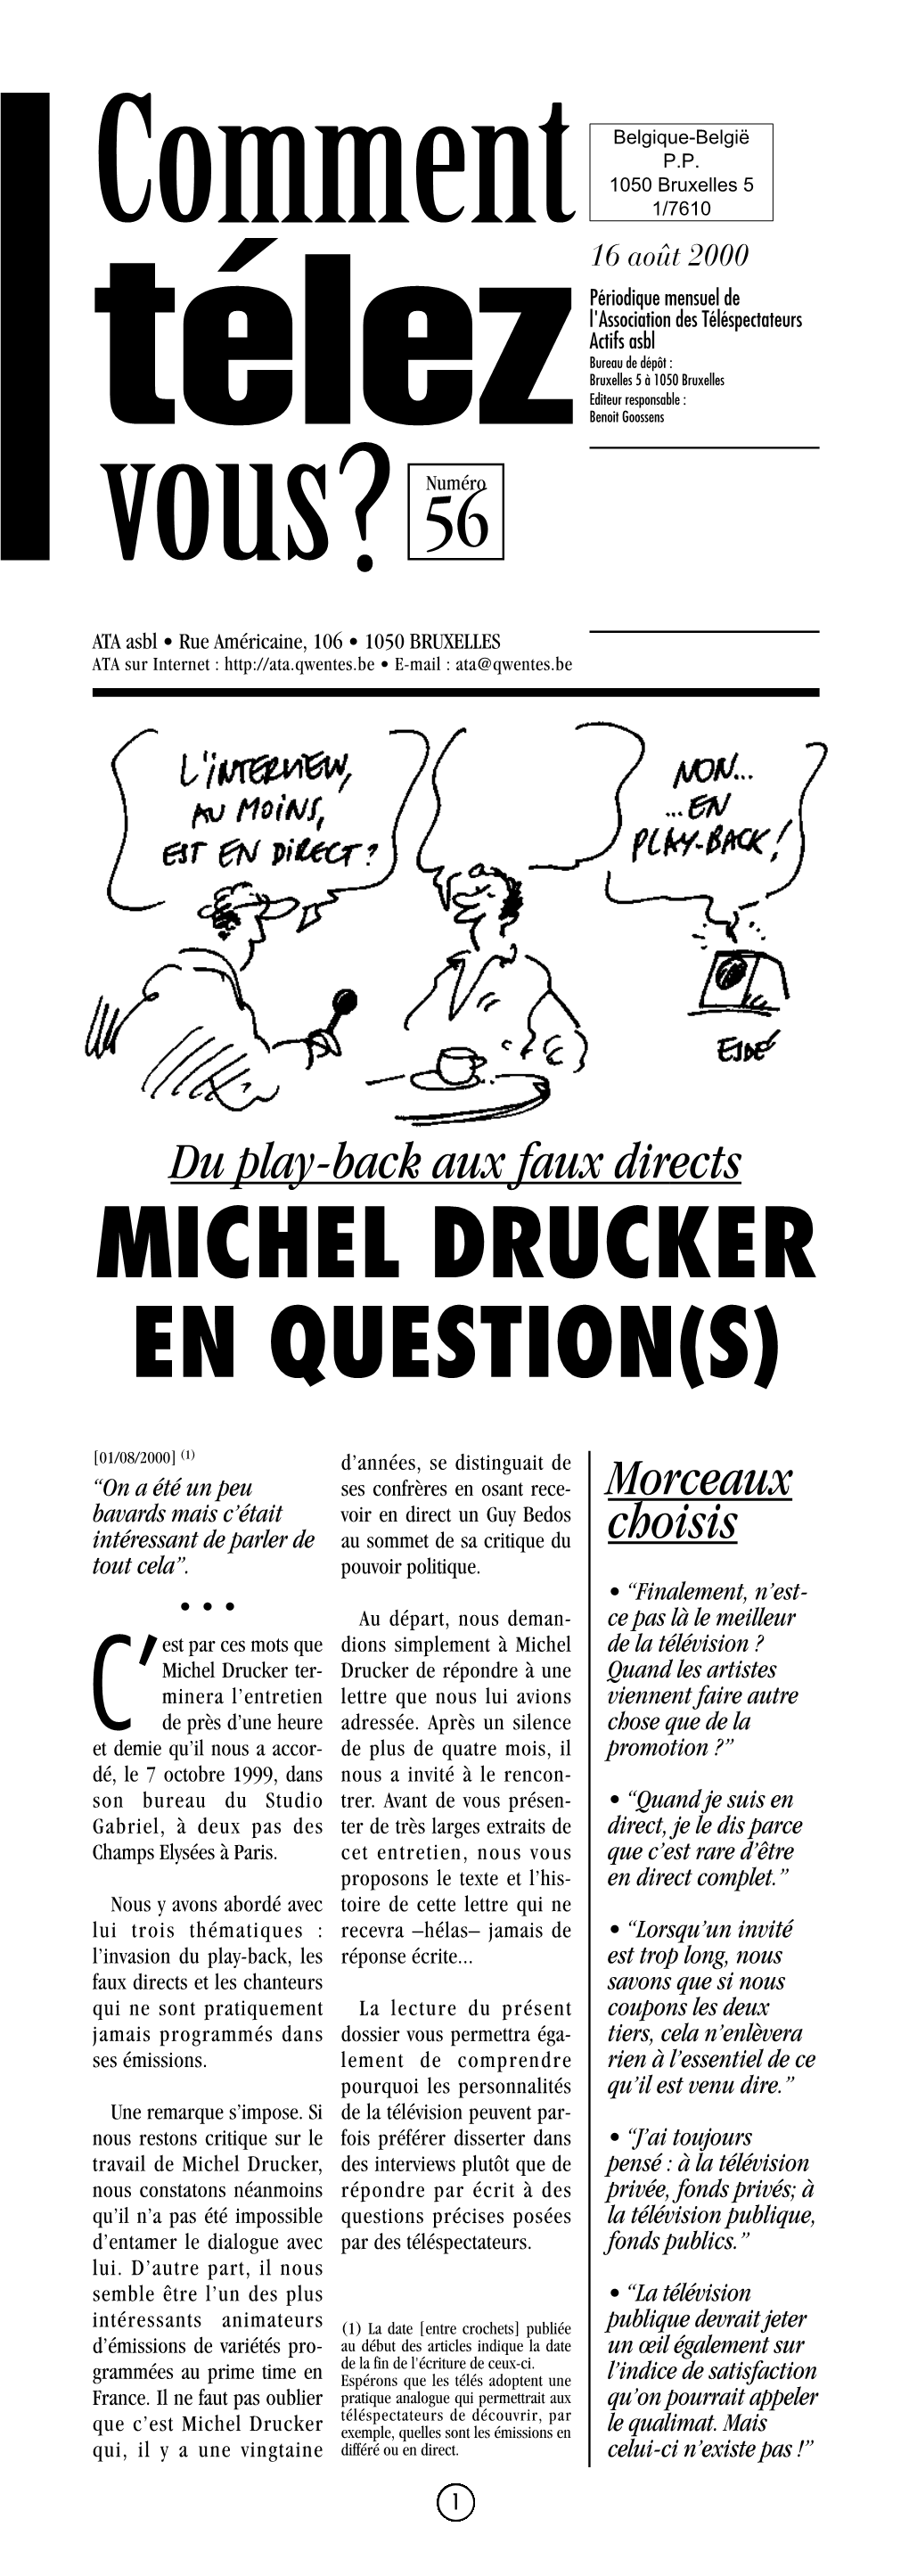 Michel Drucker En Question(S)